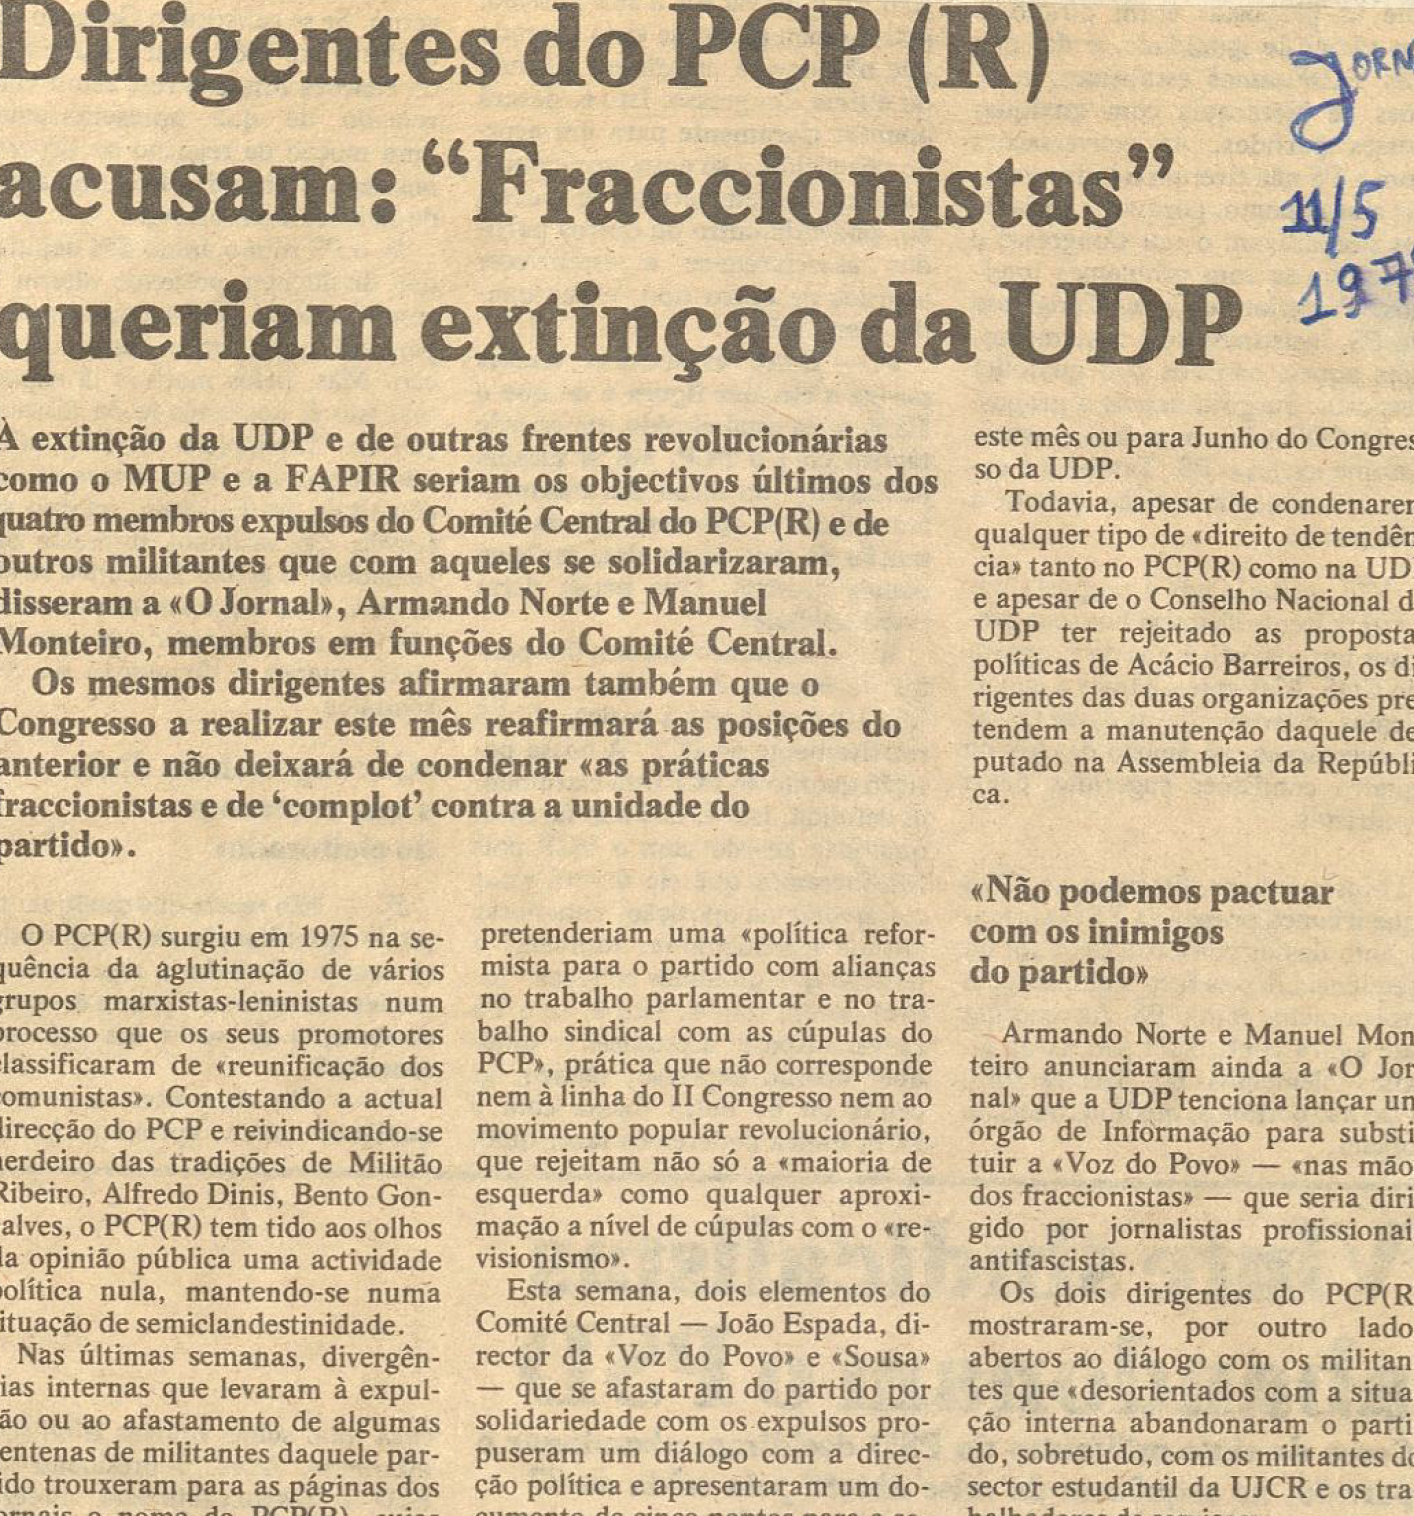 "Dirigentes do PCP (R) acusam: Francionistas queriam extinção da UDP ".